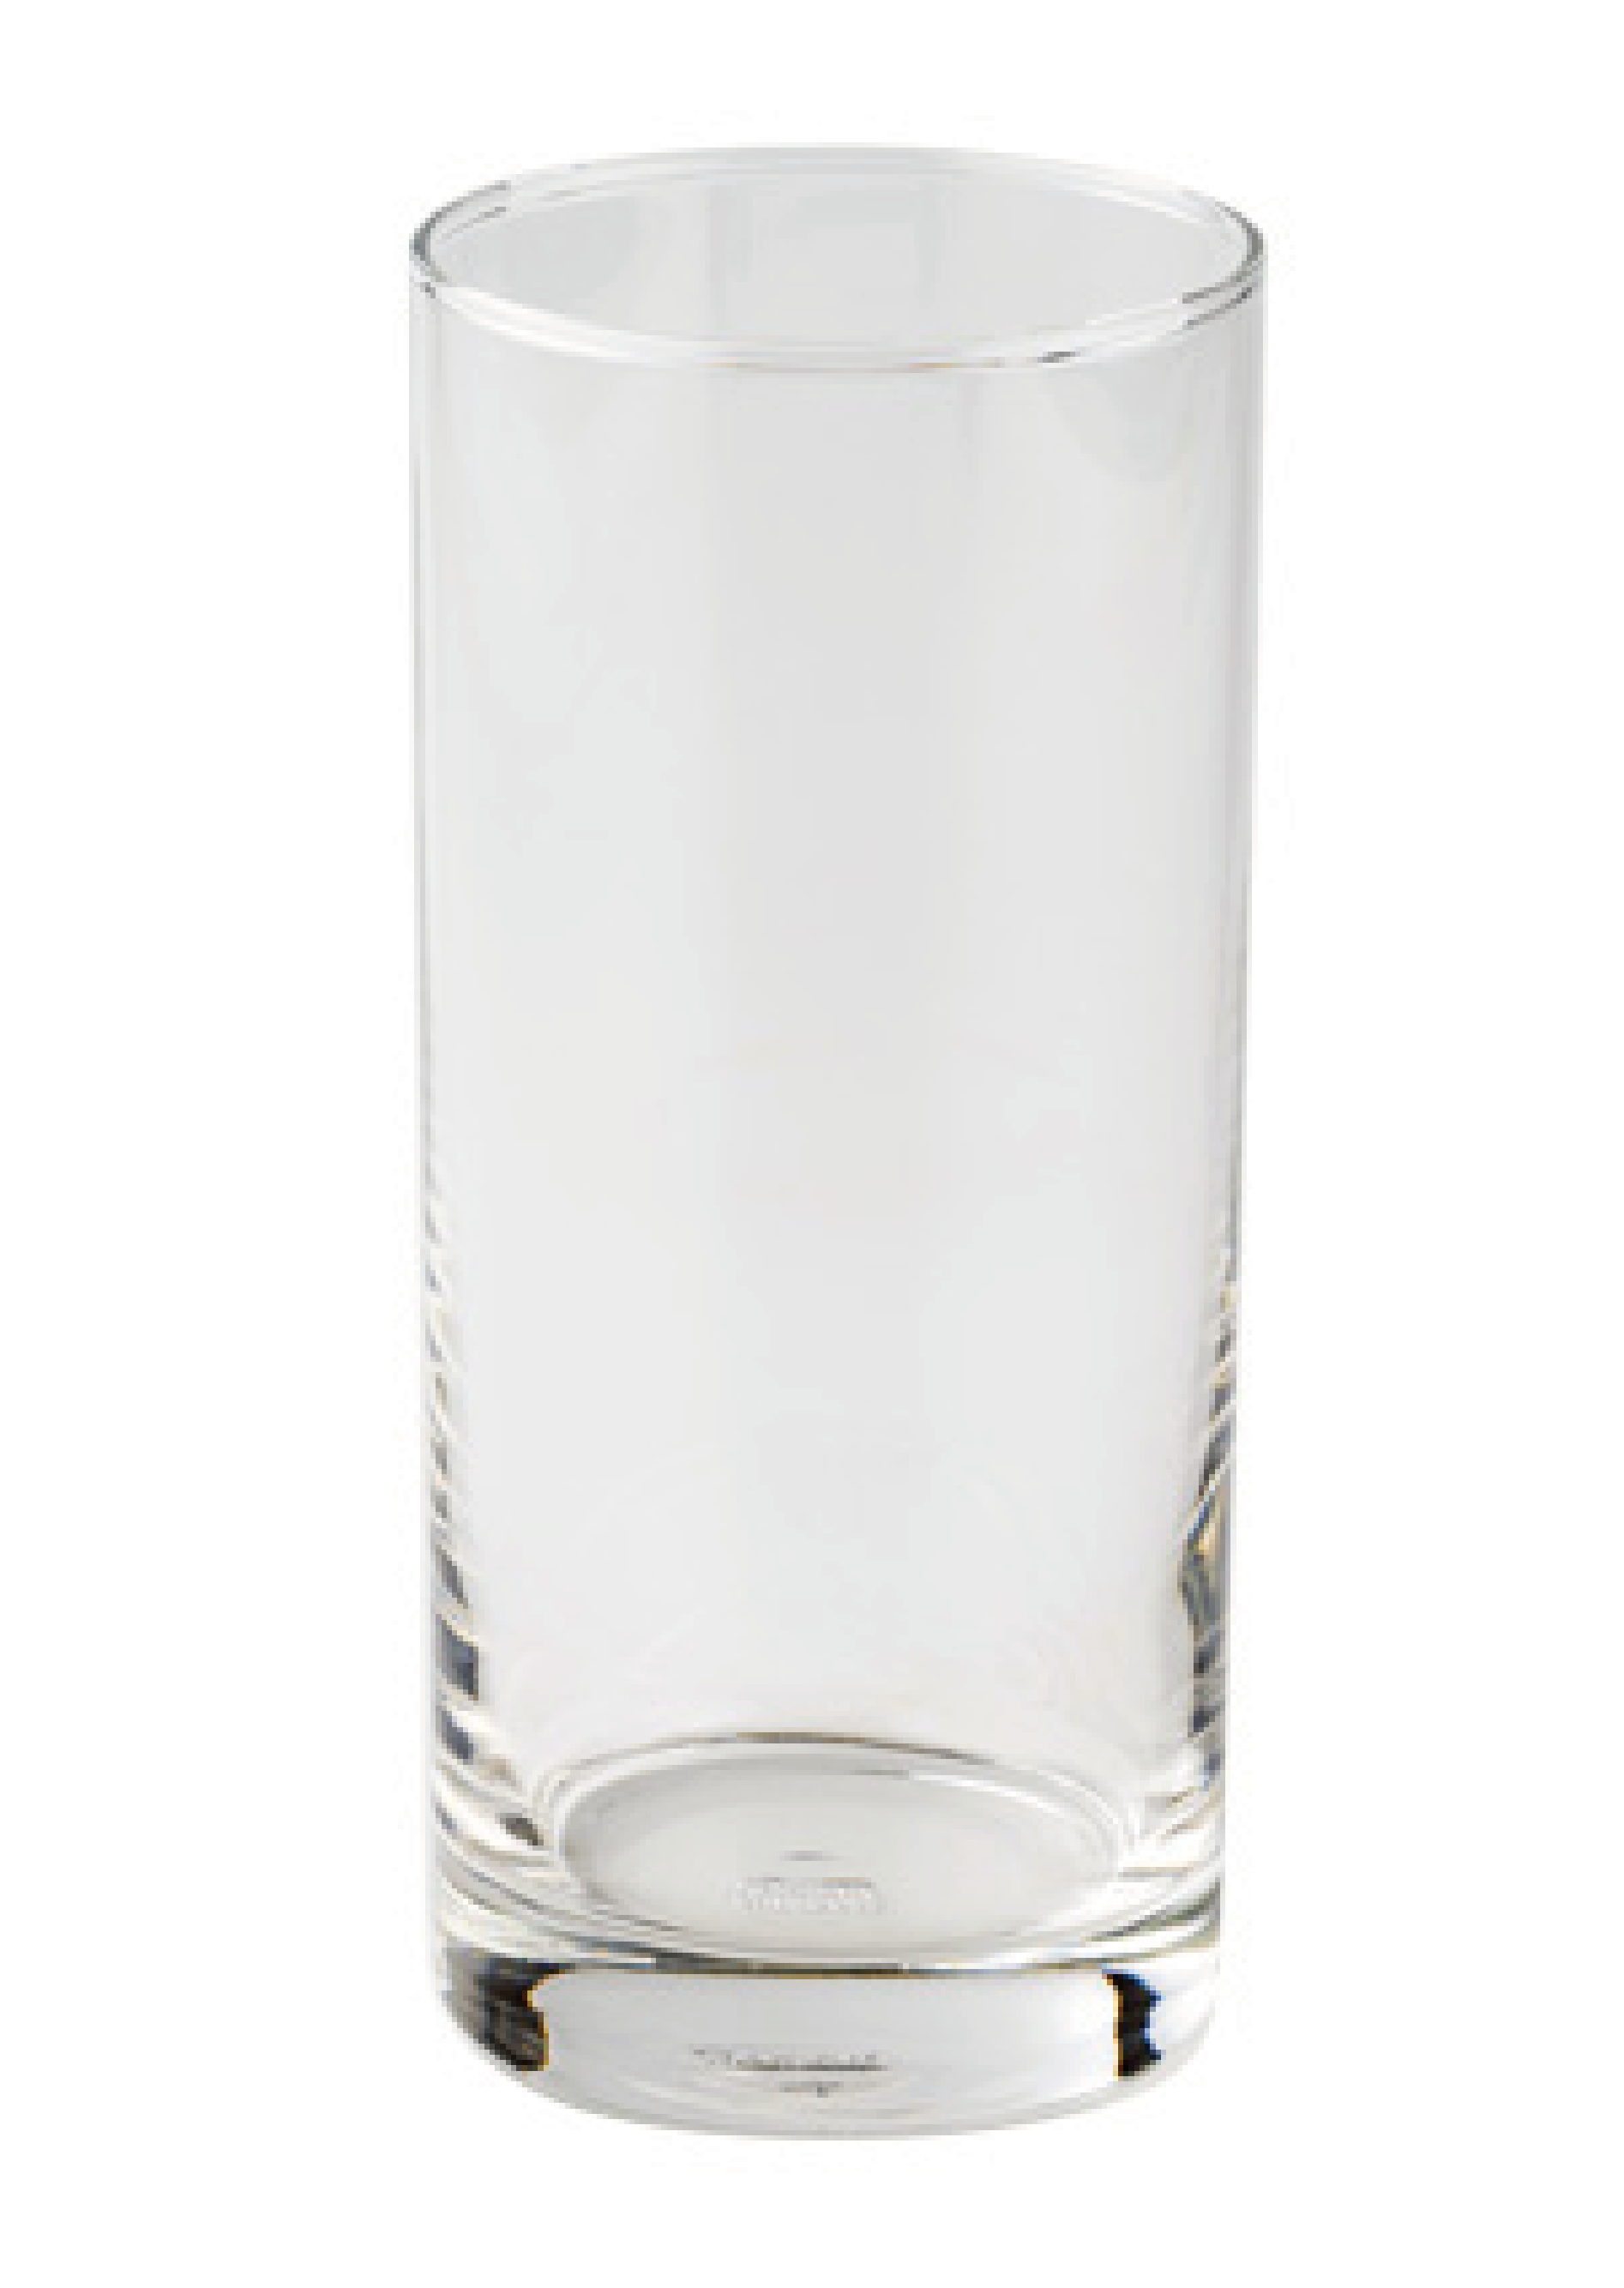 オーシャンロンググラス(380ml)